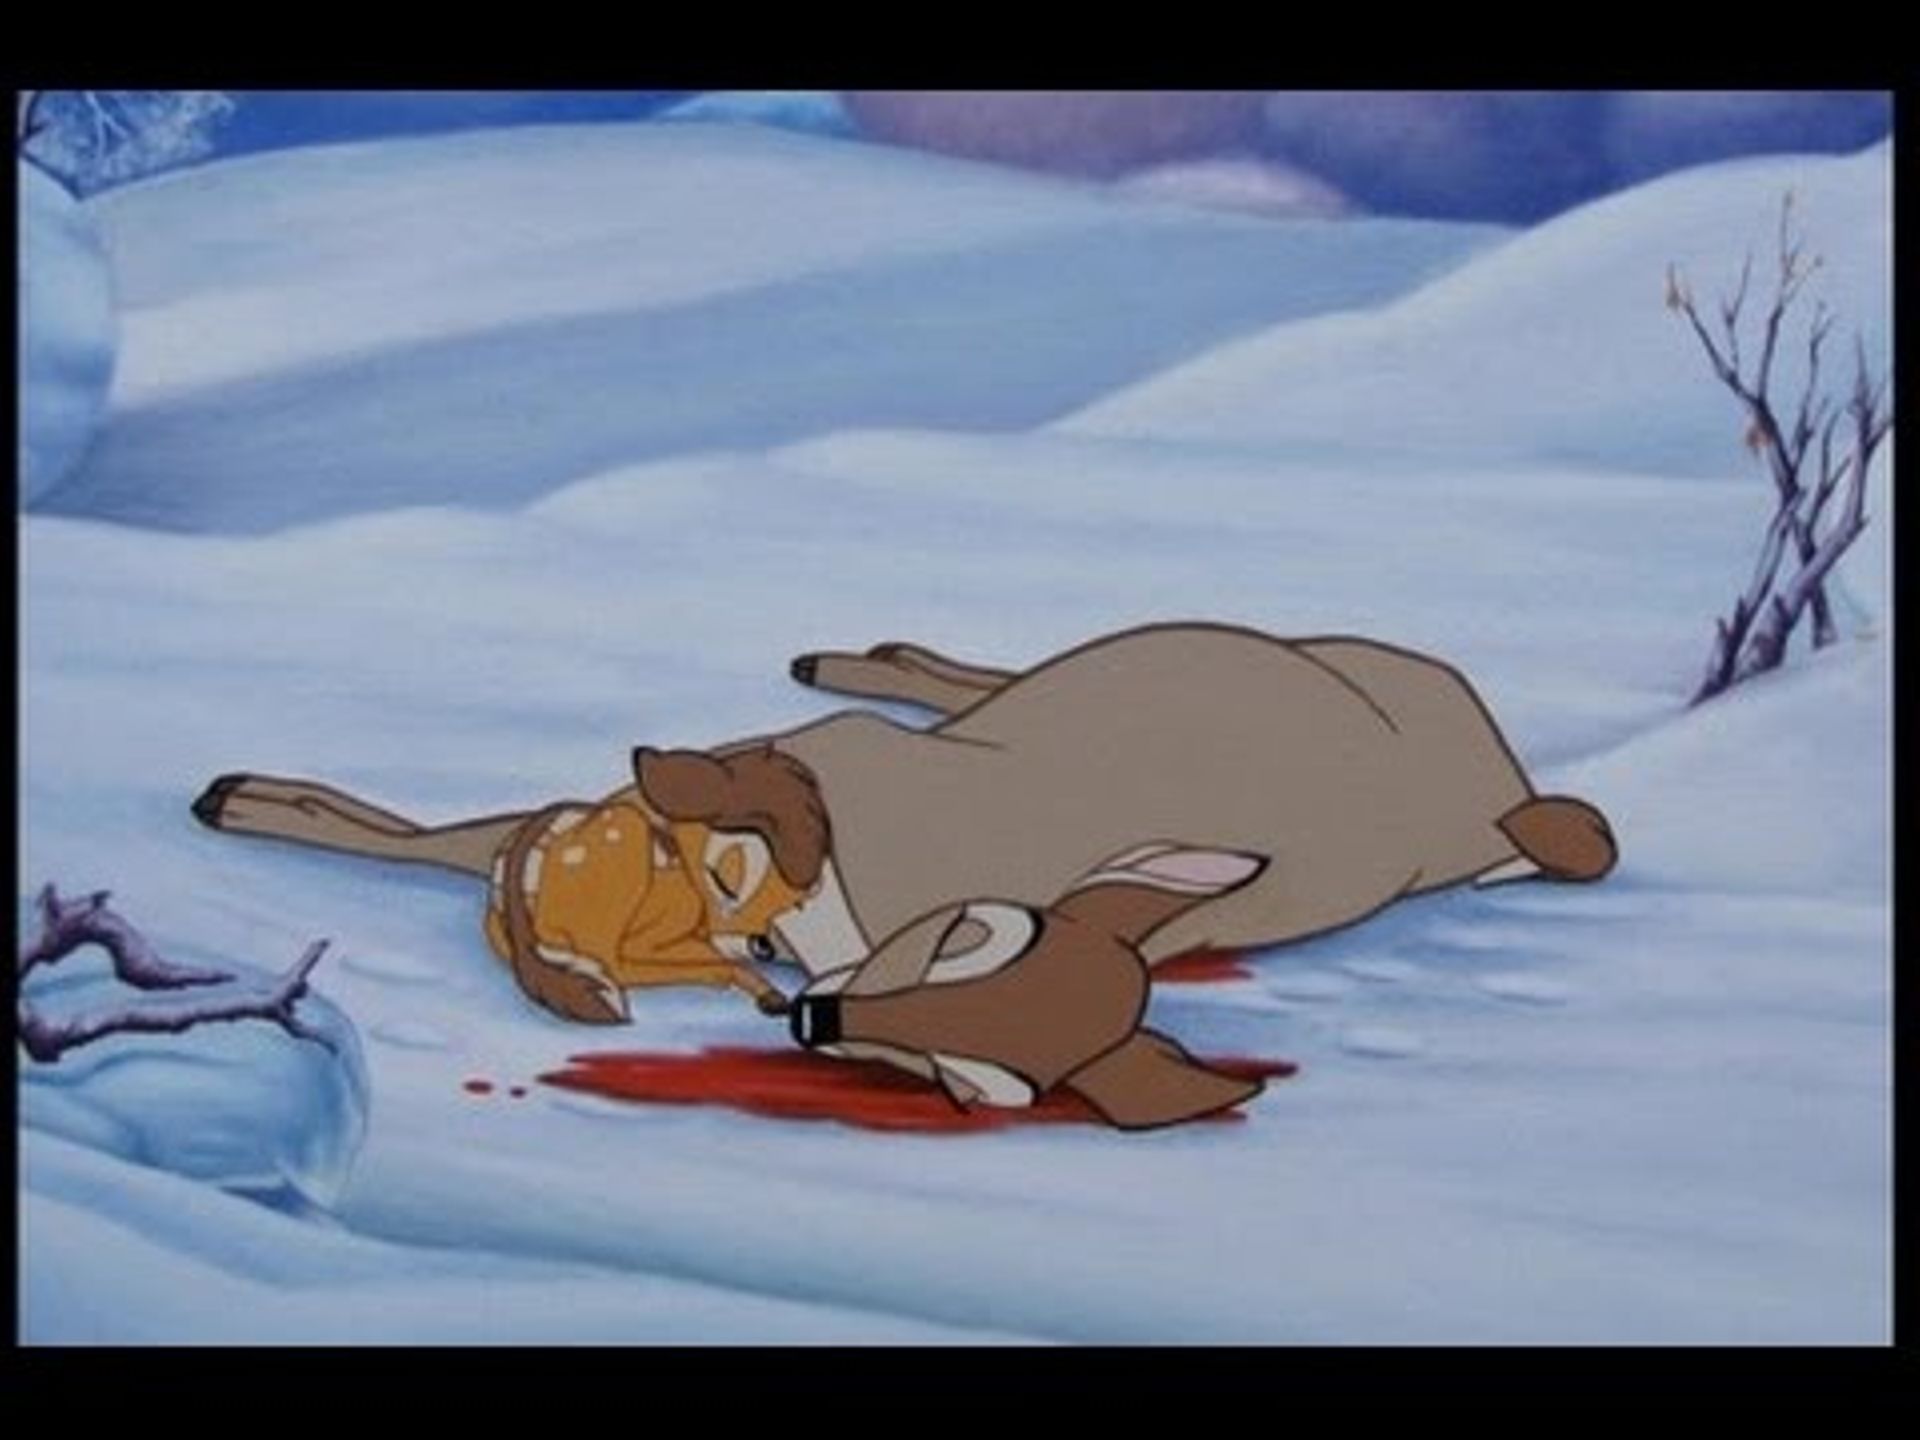 La mort de la maman de Bambi : une scène à regarder avec son enfant